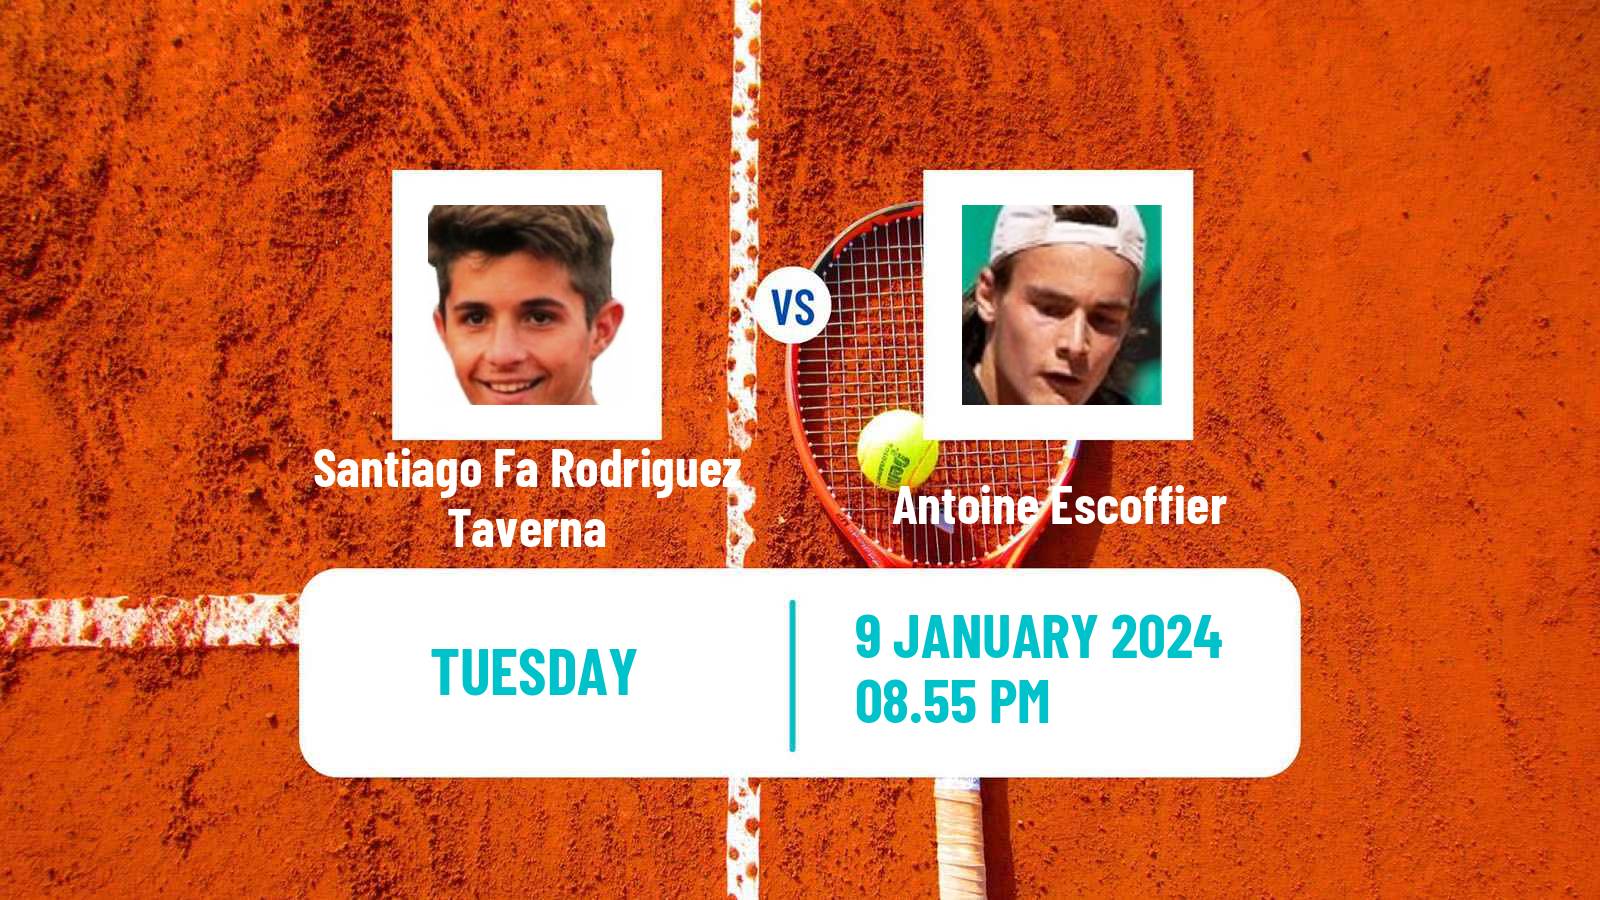 Tennis ATP Australian Open Santiago Fa Rodriguez Taverna - Antoine Escoffier